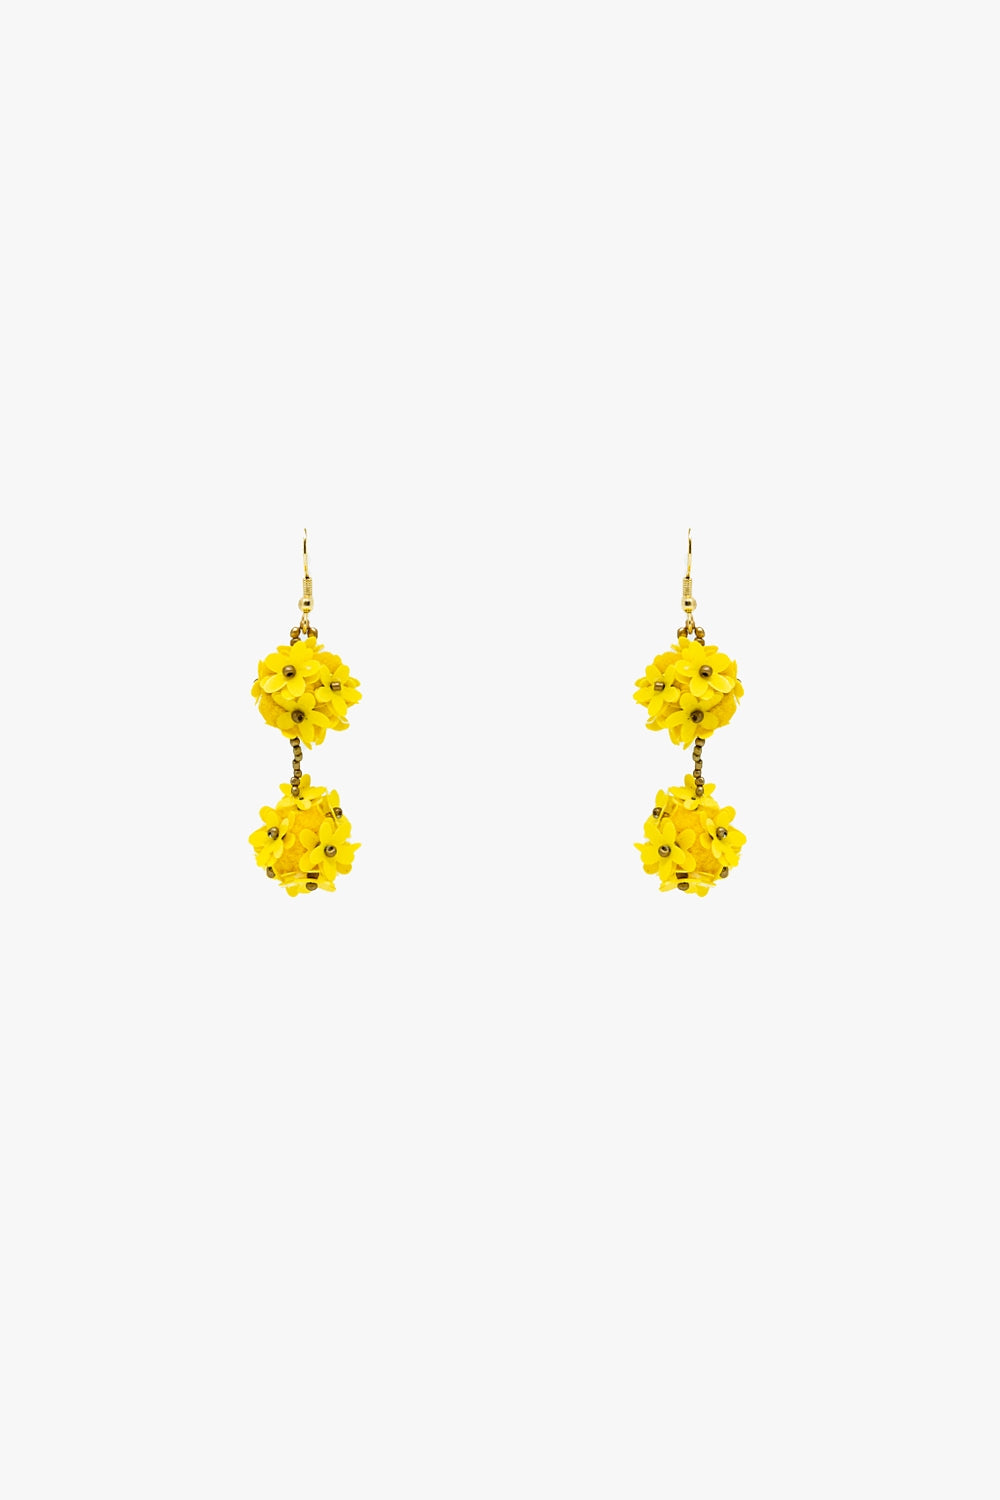 Q2 Orecchini pendenti a fiore con margherite gialle